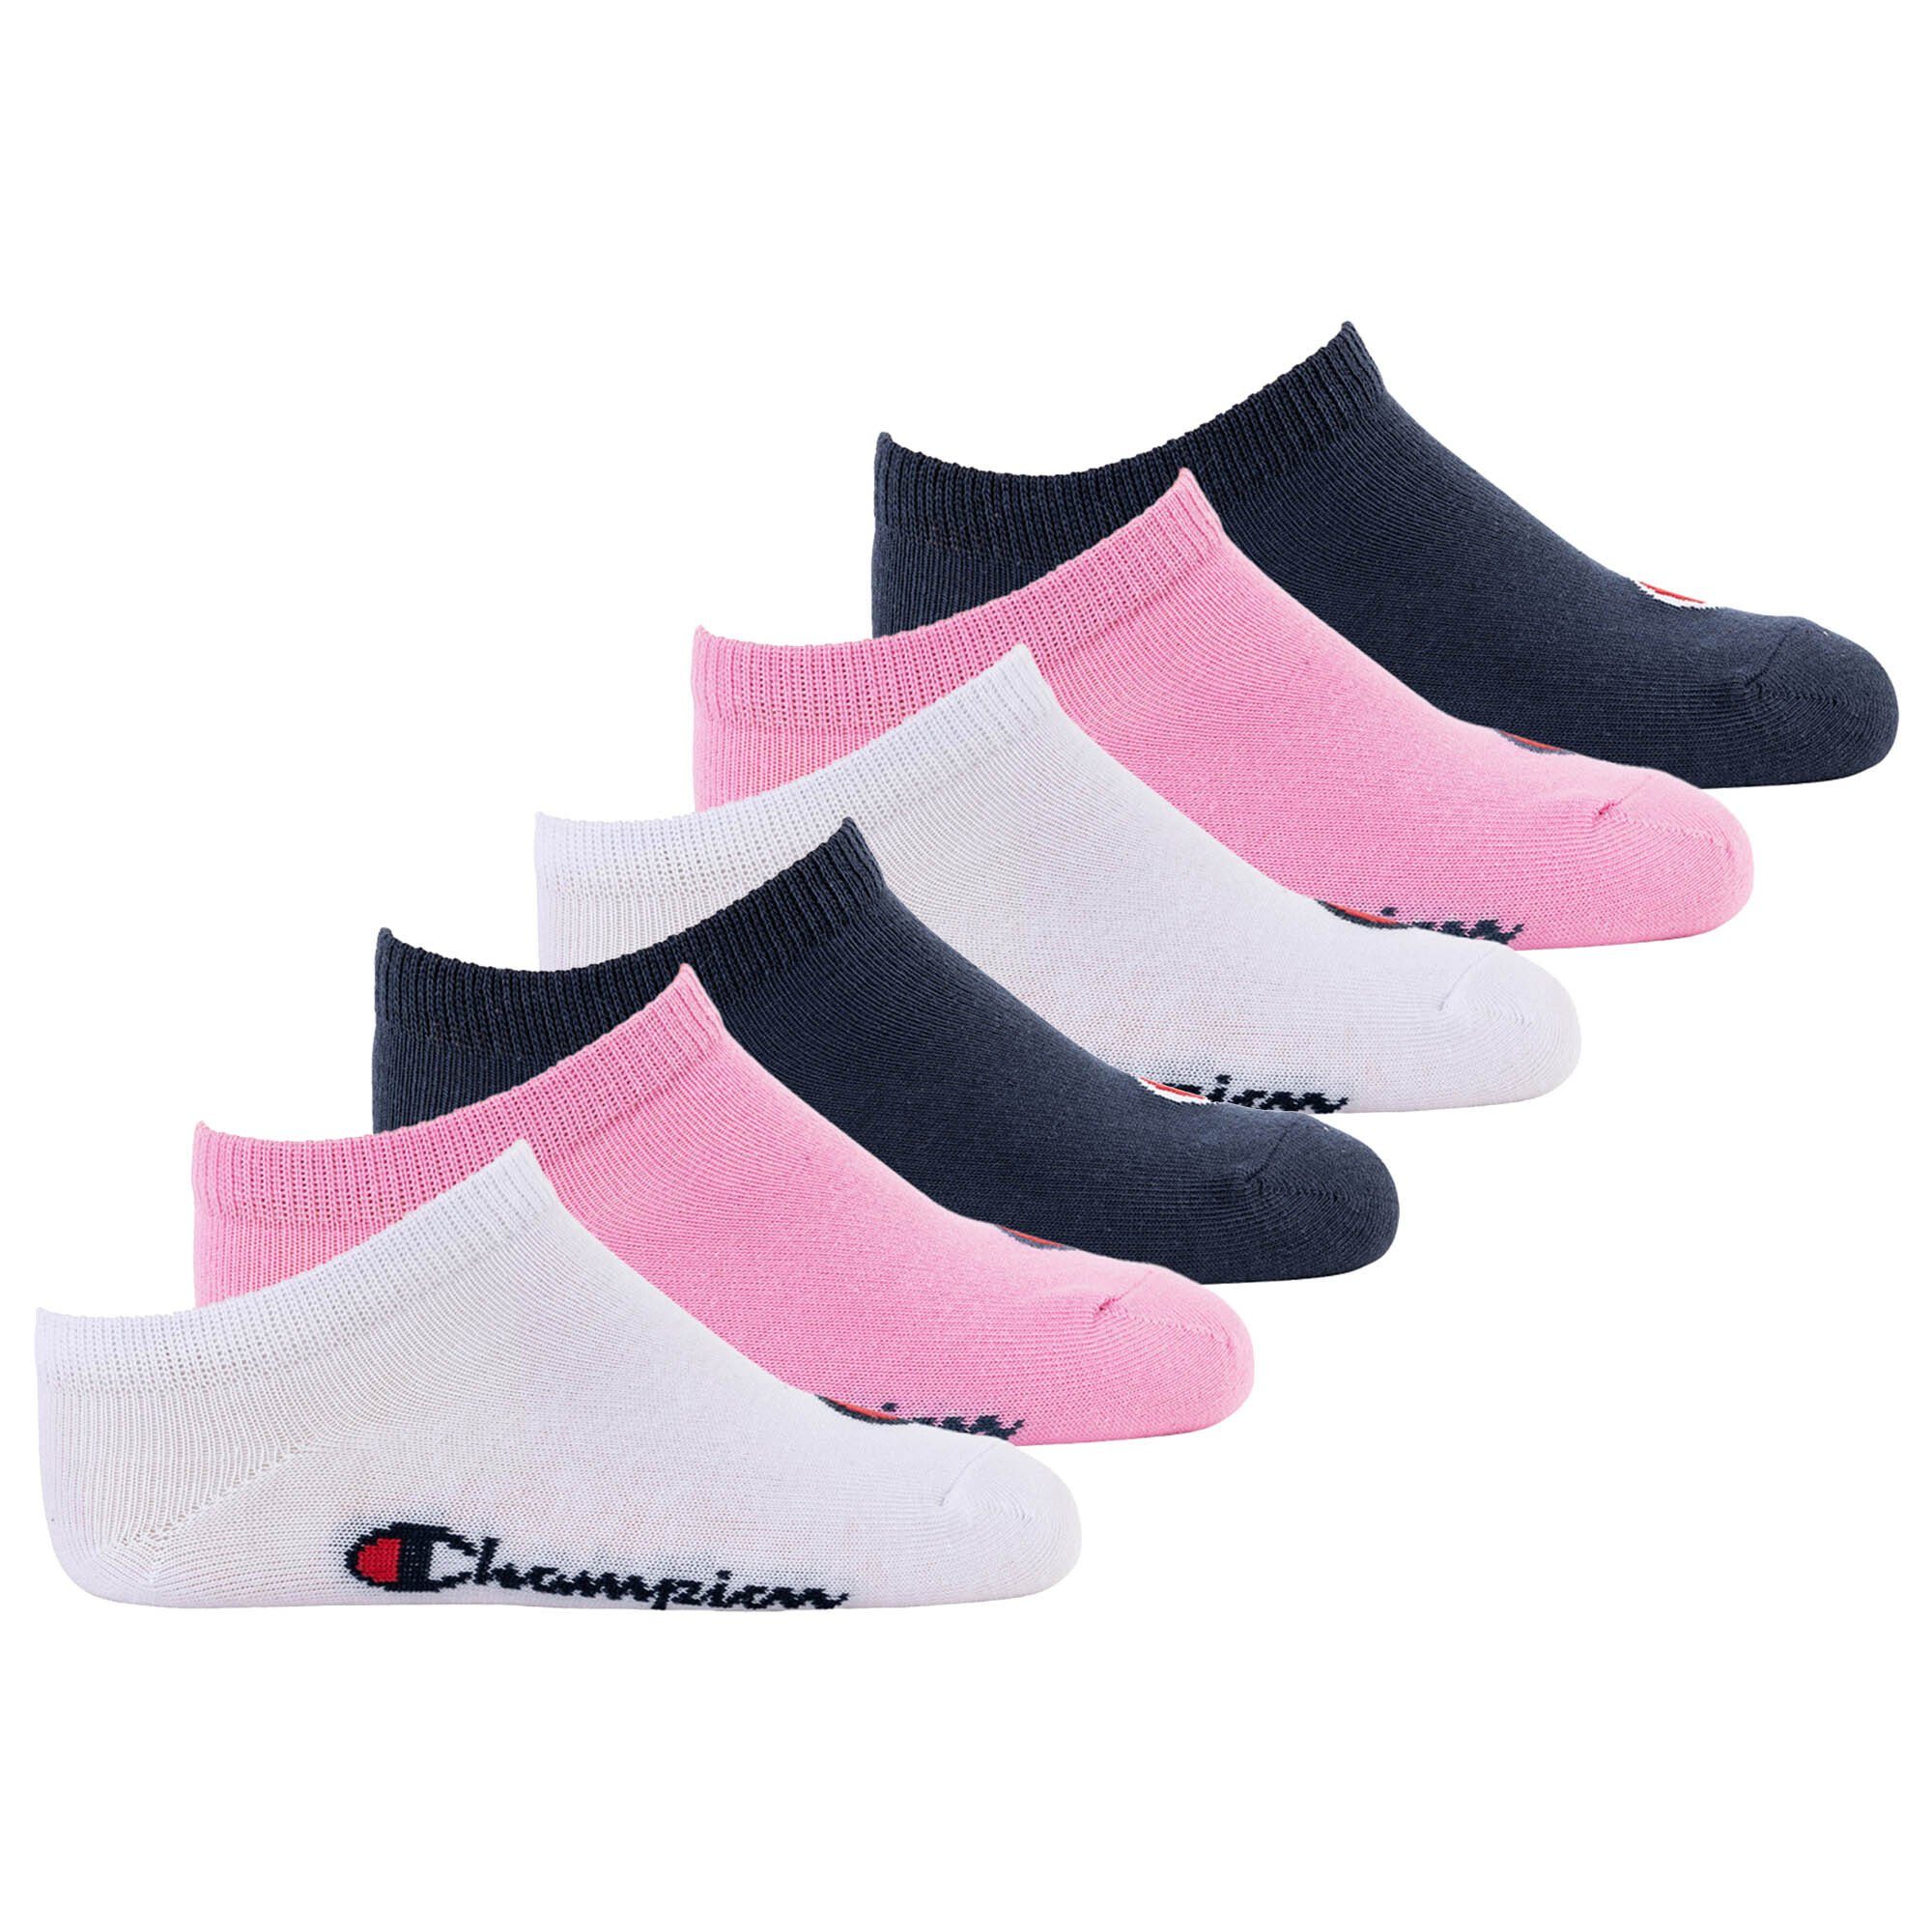 Champion Freizeitsocken Kinder Socken, 6er Pack- Crew Socken, einfarbig Pink/Weiß/Blau